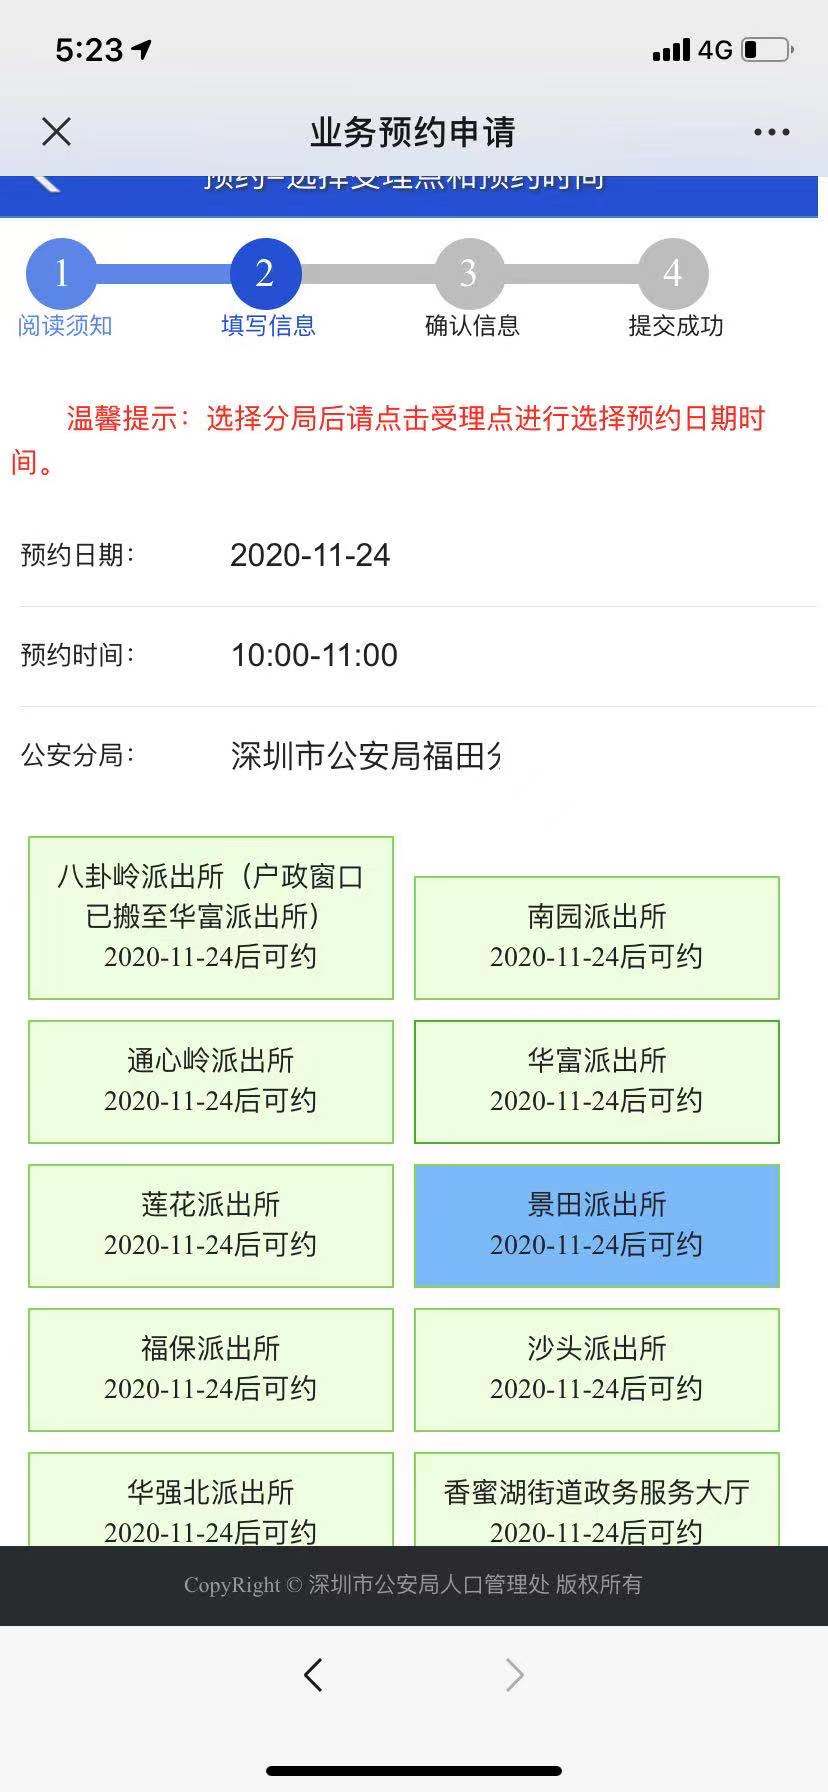 深圳办理身份证网上预约